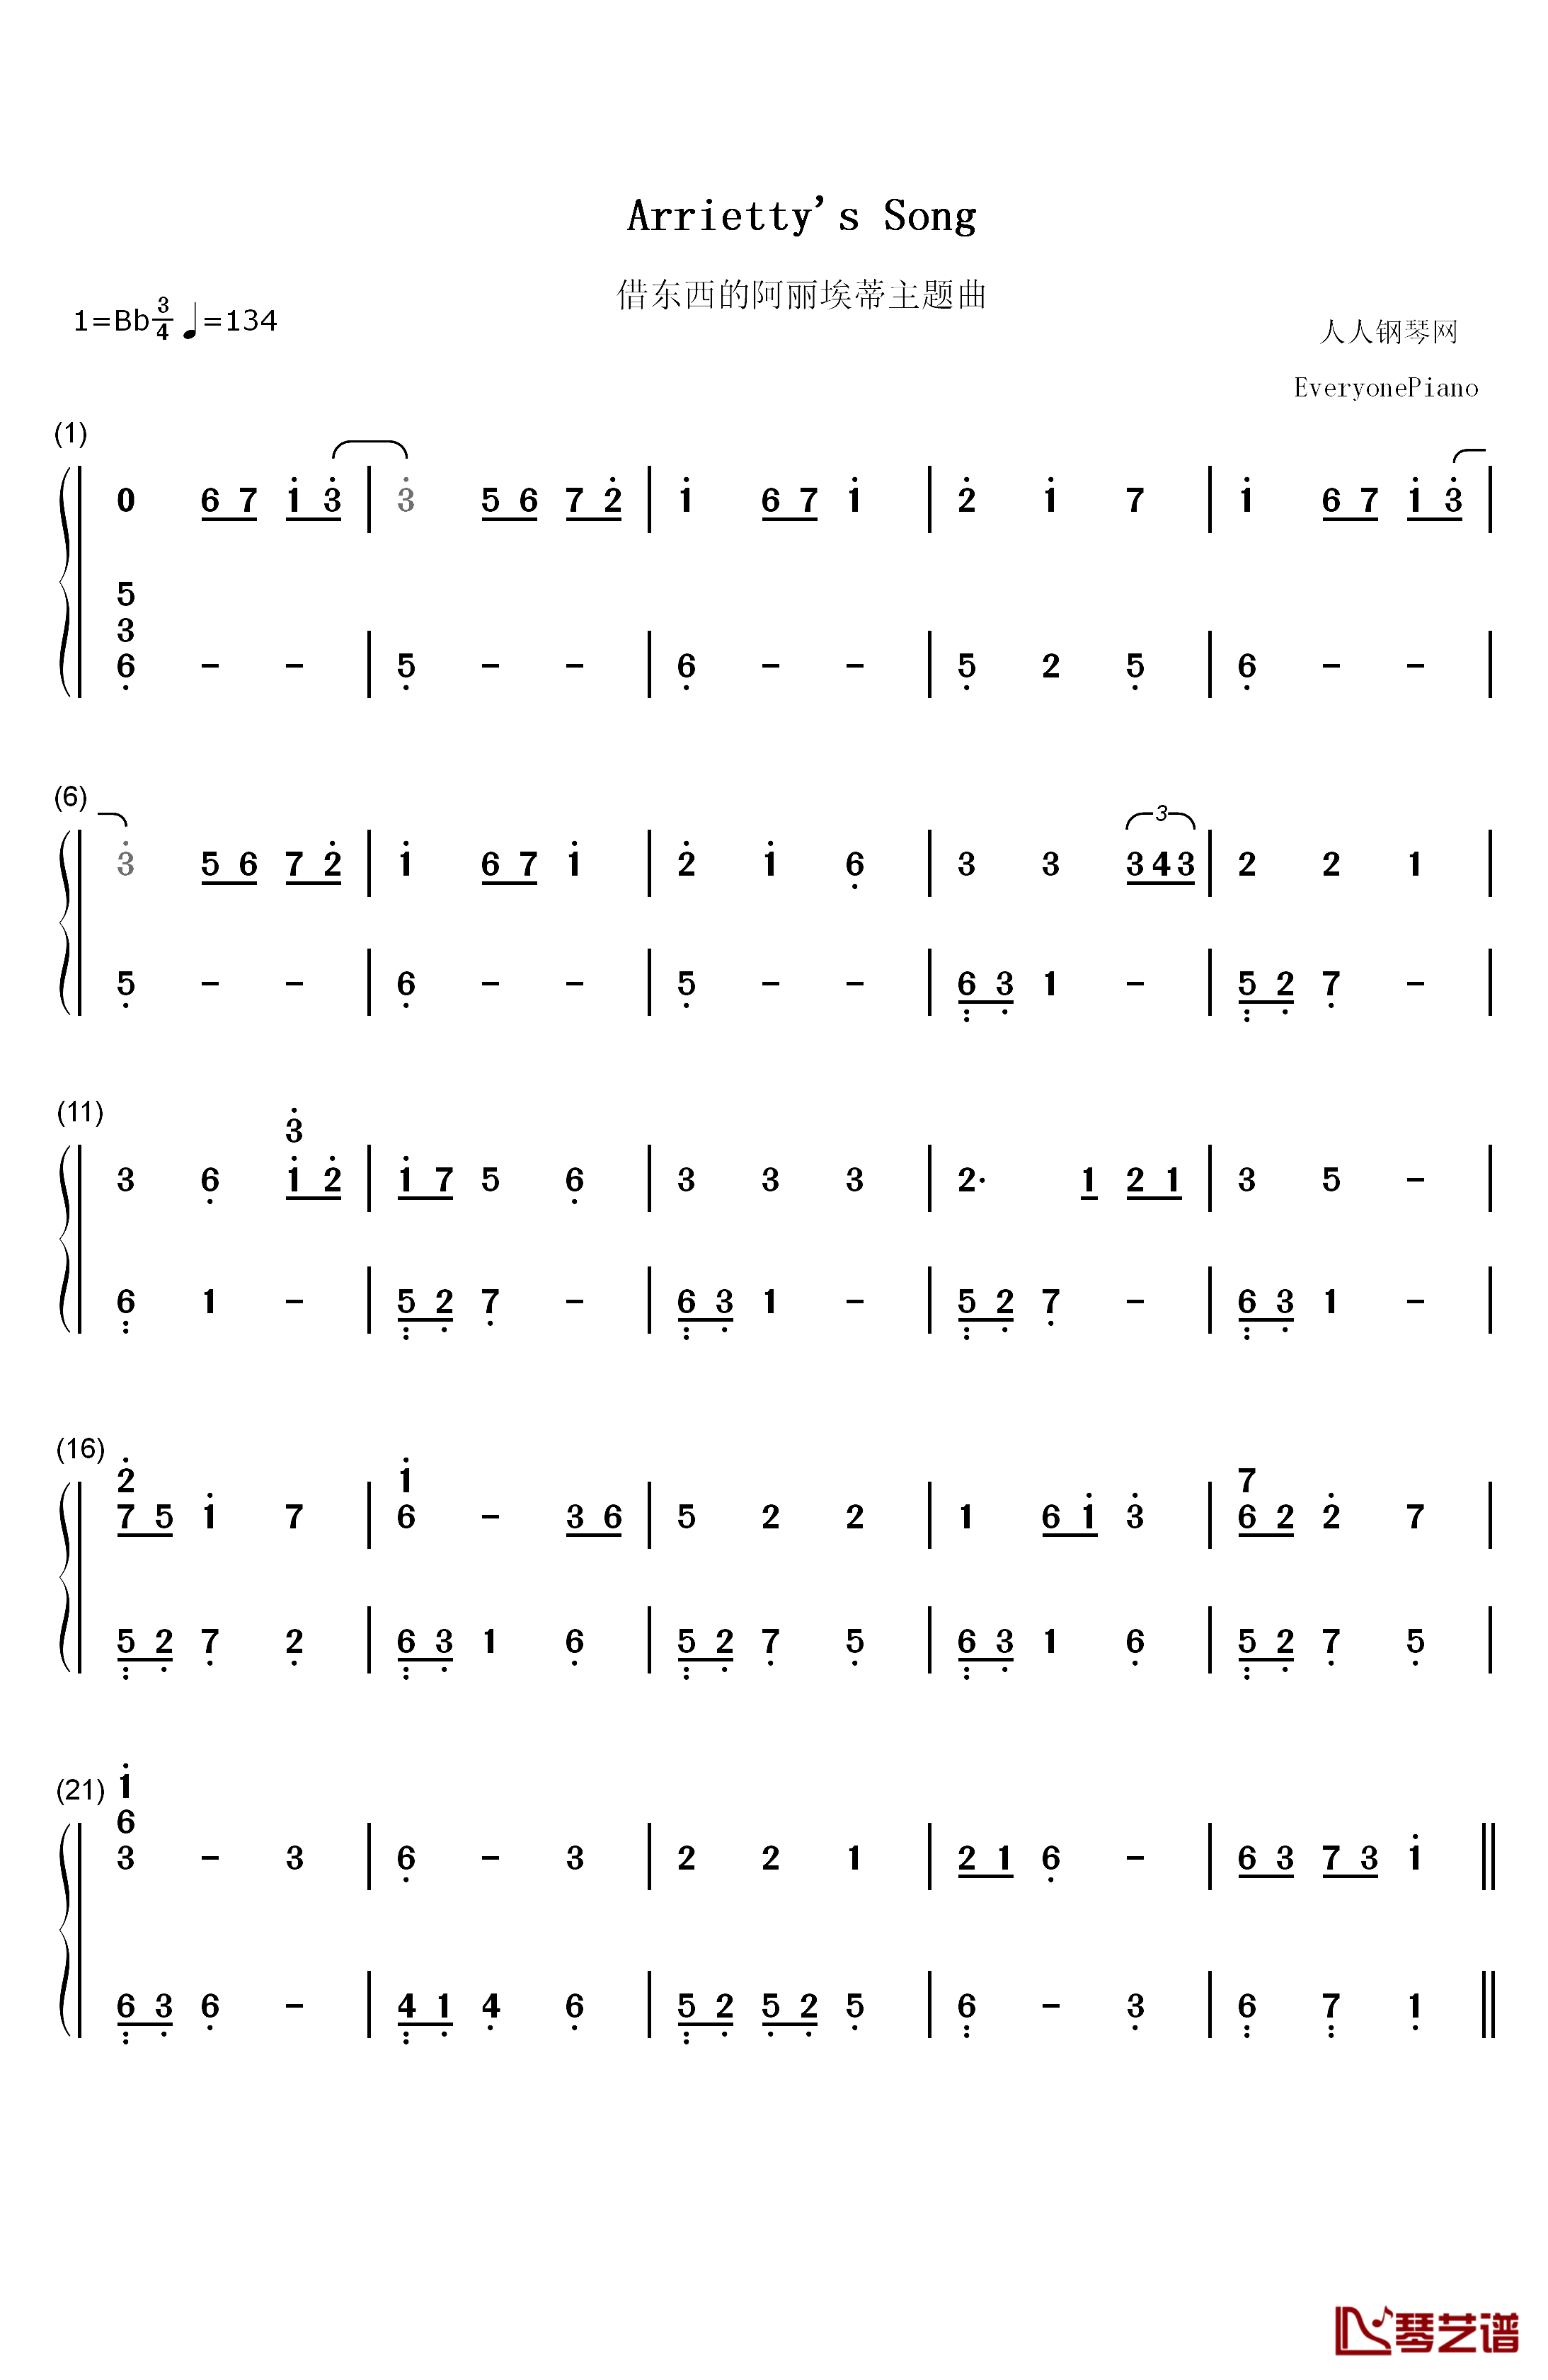 Arrietty's Song钢琴简谱-数字双手-塞西尔·科贝尔  セシルコルベル 宫崎骏1